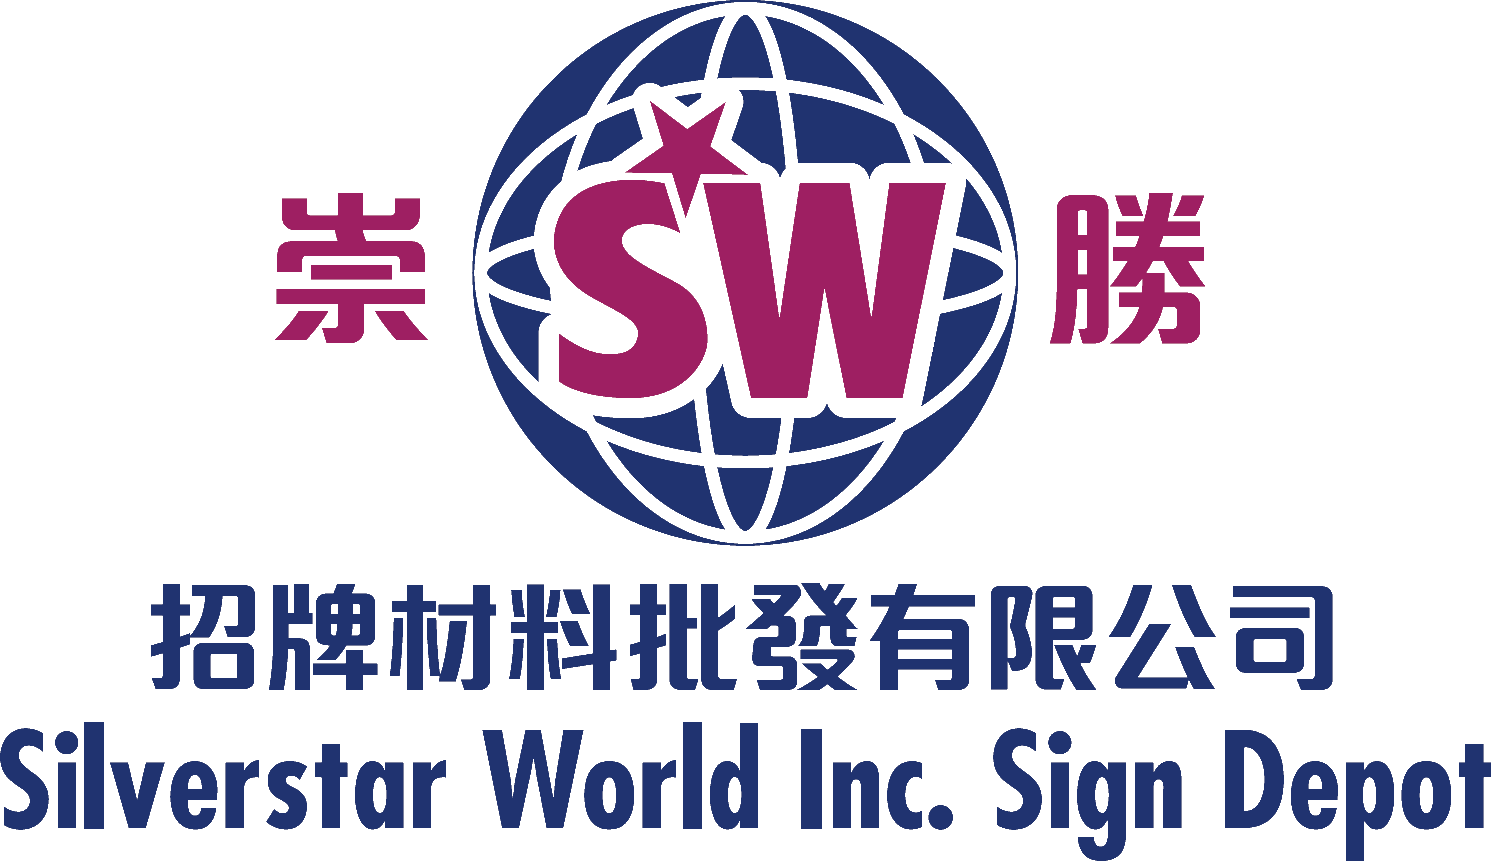 崇勝招牌材料批發有限公司 Silverstar World Inc. Sign Depot